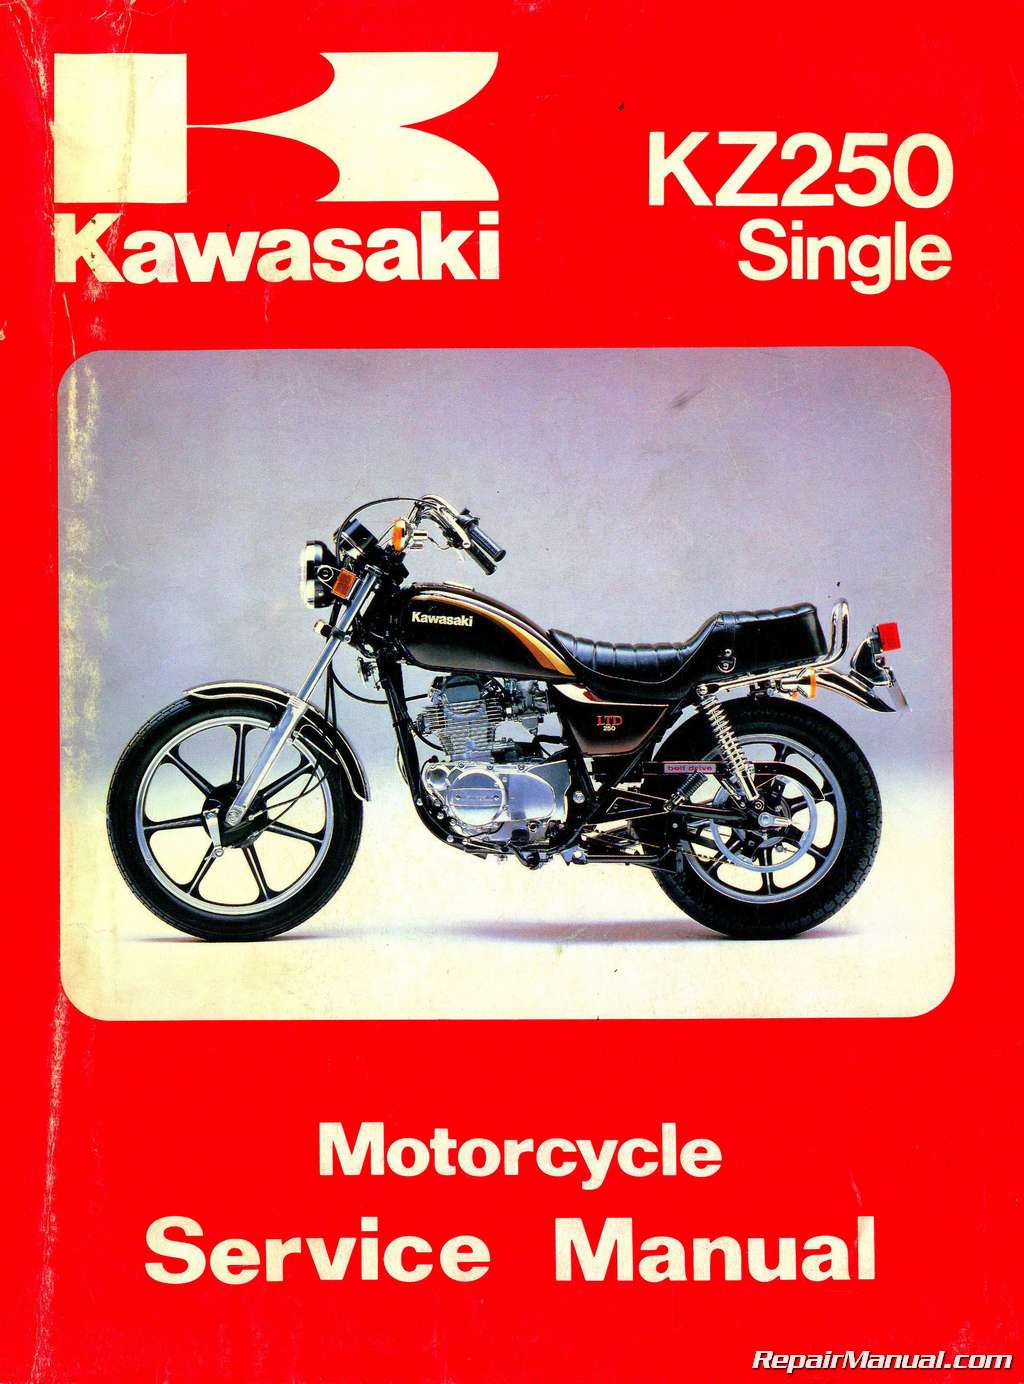 Repair Manual Of Motorcycle